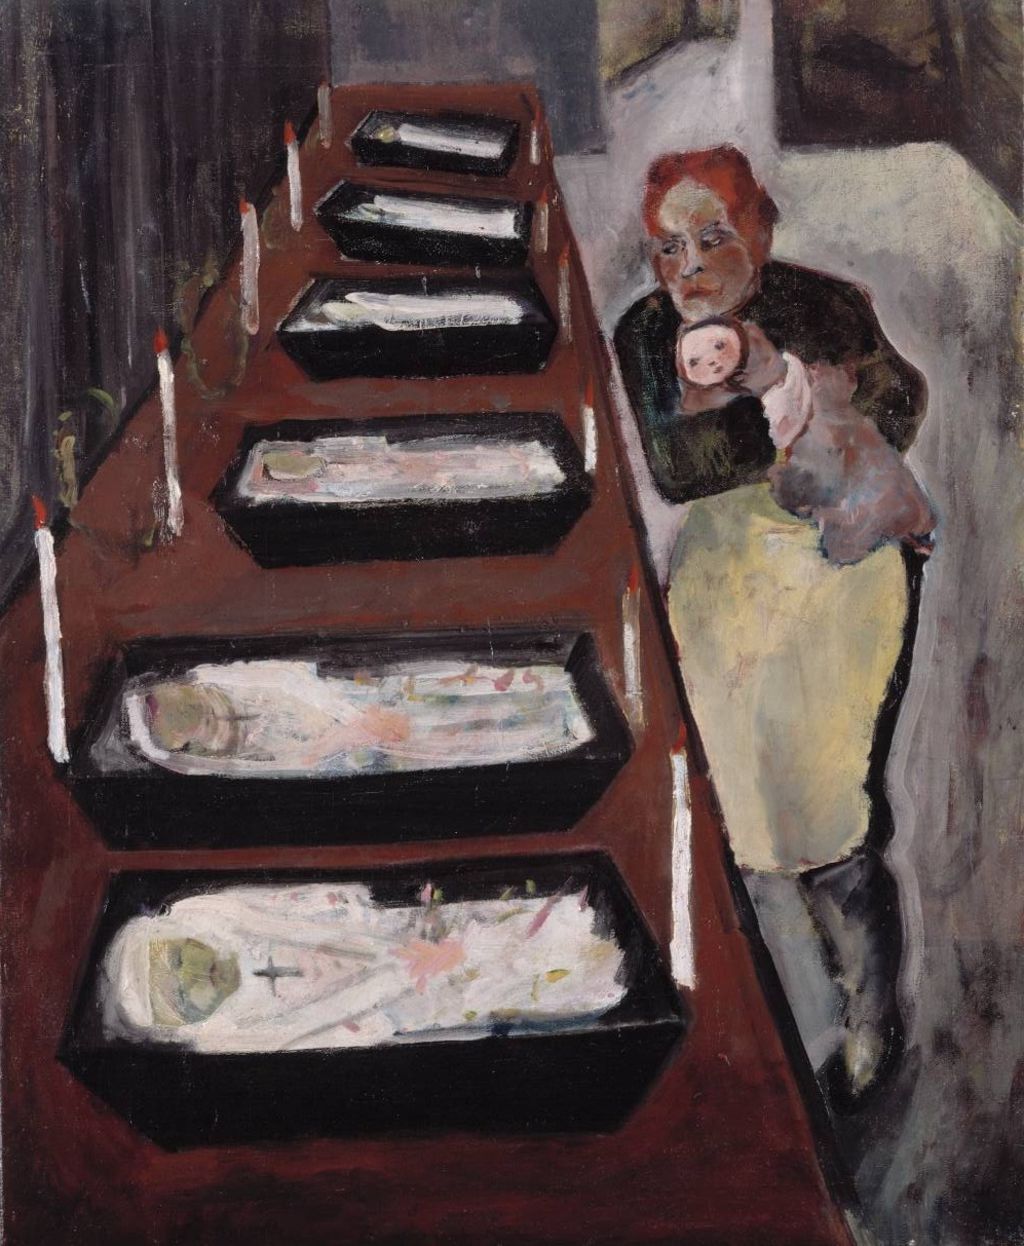 Gemälde: Kindertod, 1917/18